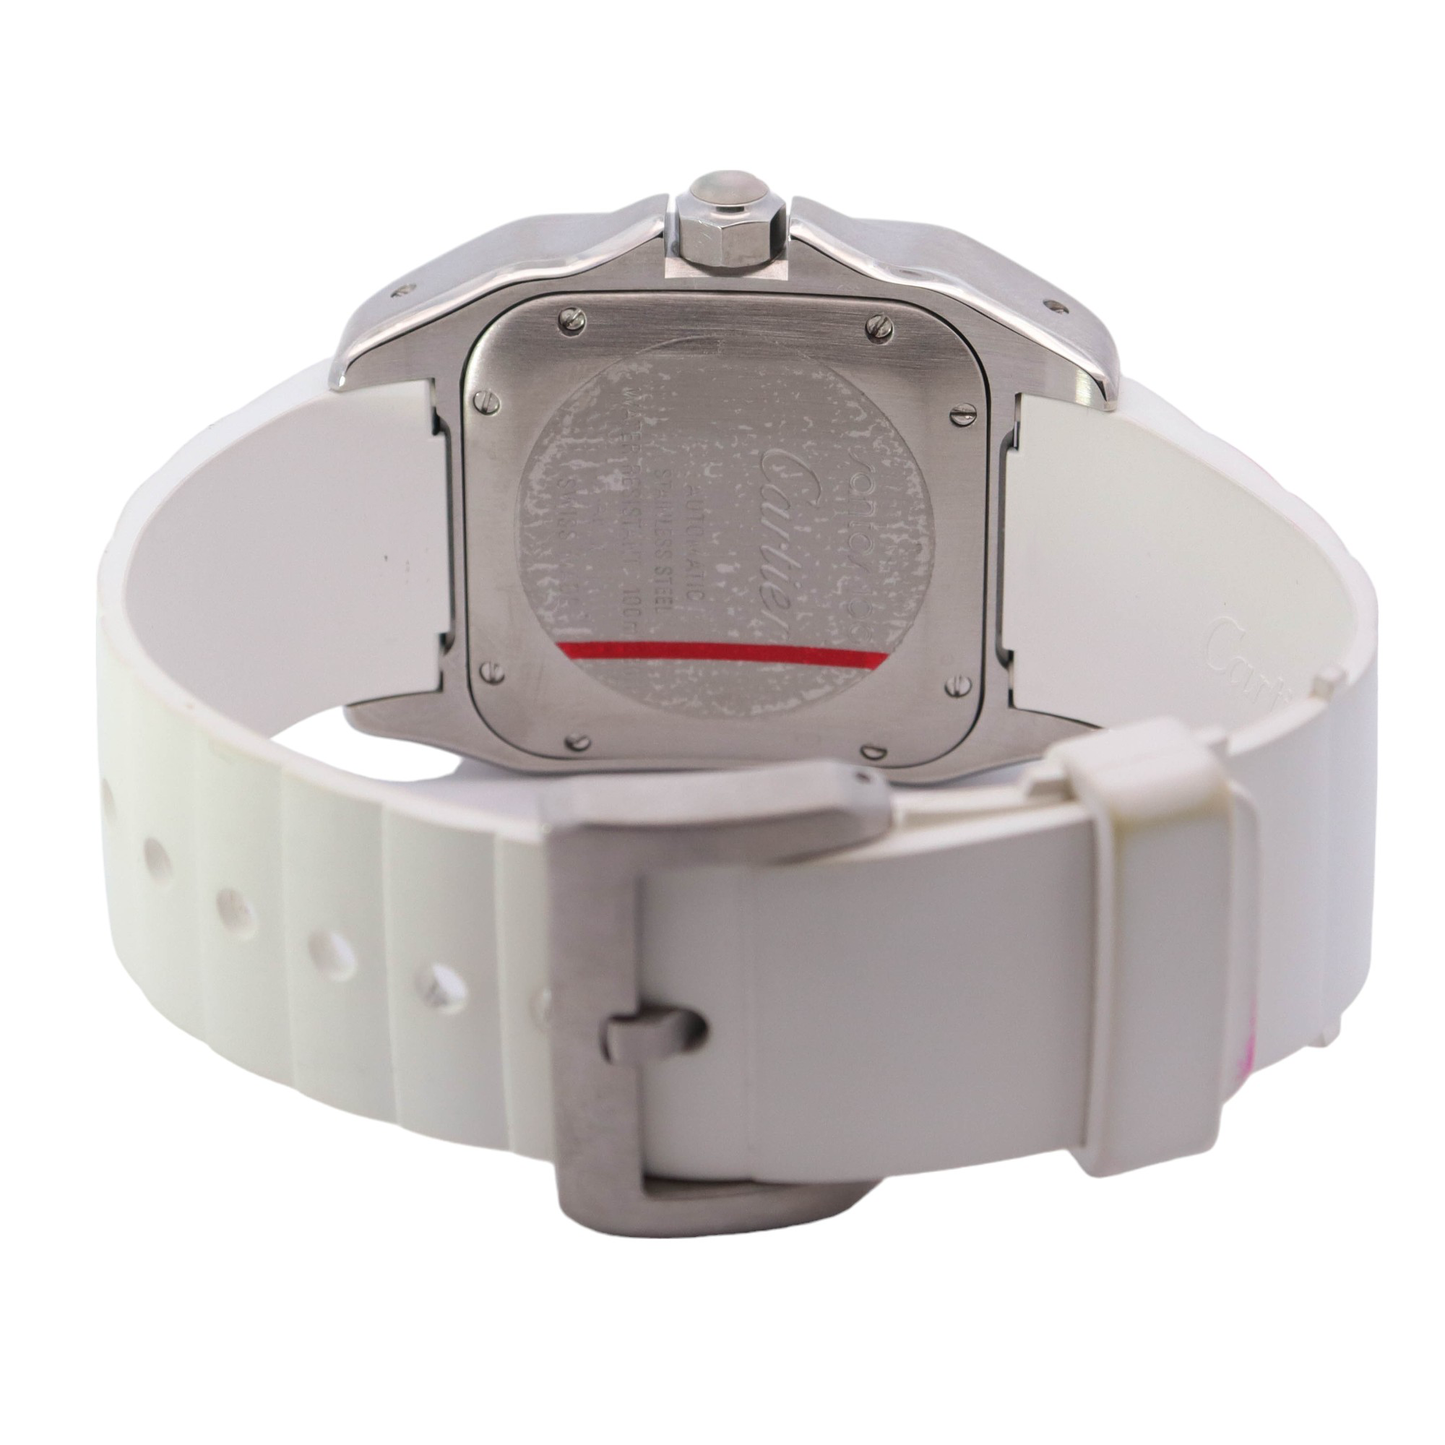 Cartier Santos 100 Stainless Steel 32mm White Roman Dial Watch Reference # W20122U2 - Happy Jewelers Fine Jewelry Lifetime Warranty